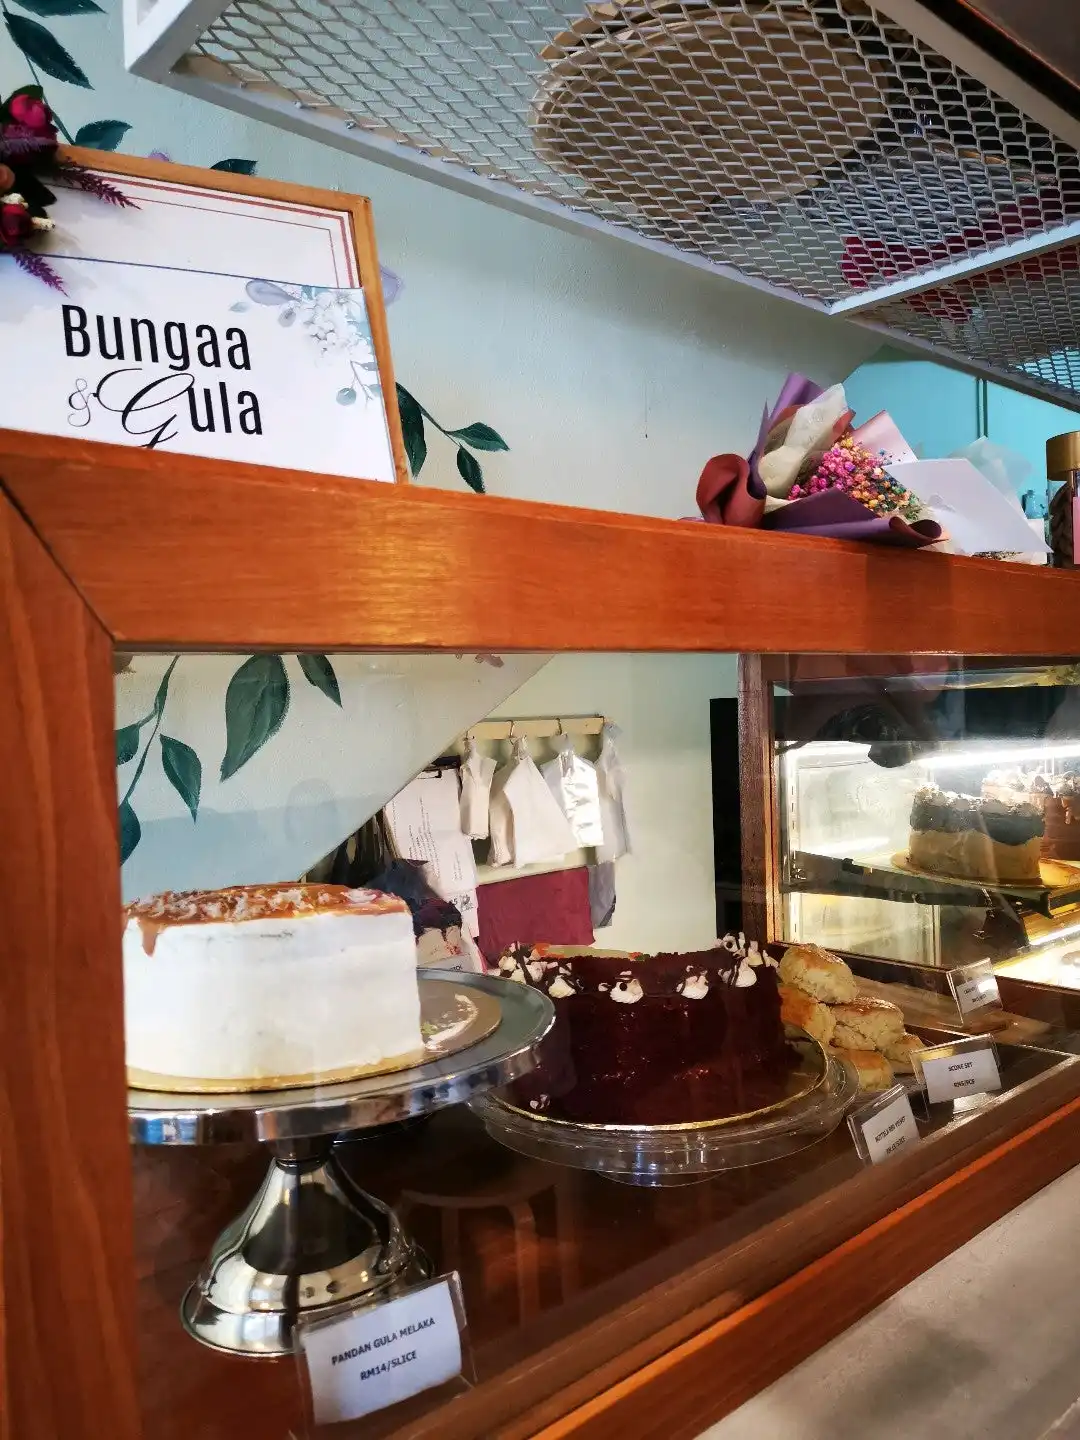 Cafe Bungaa & Gula